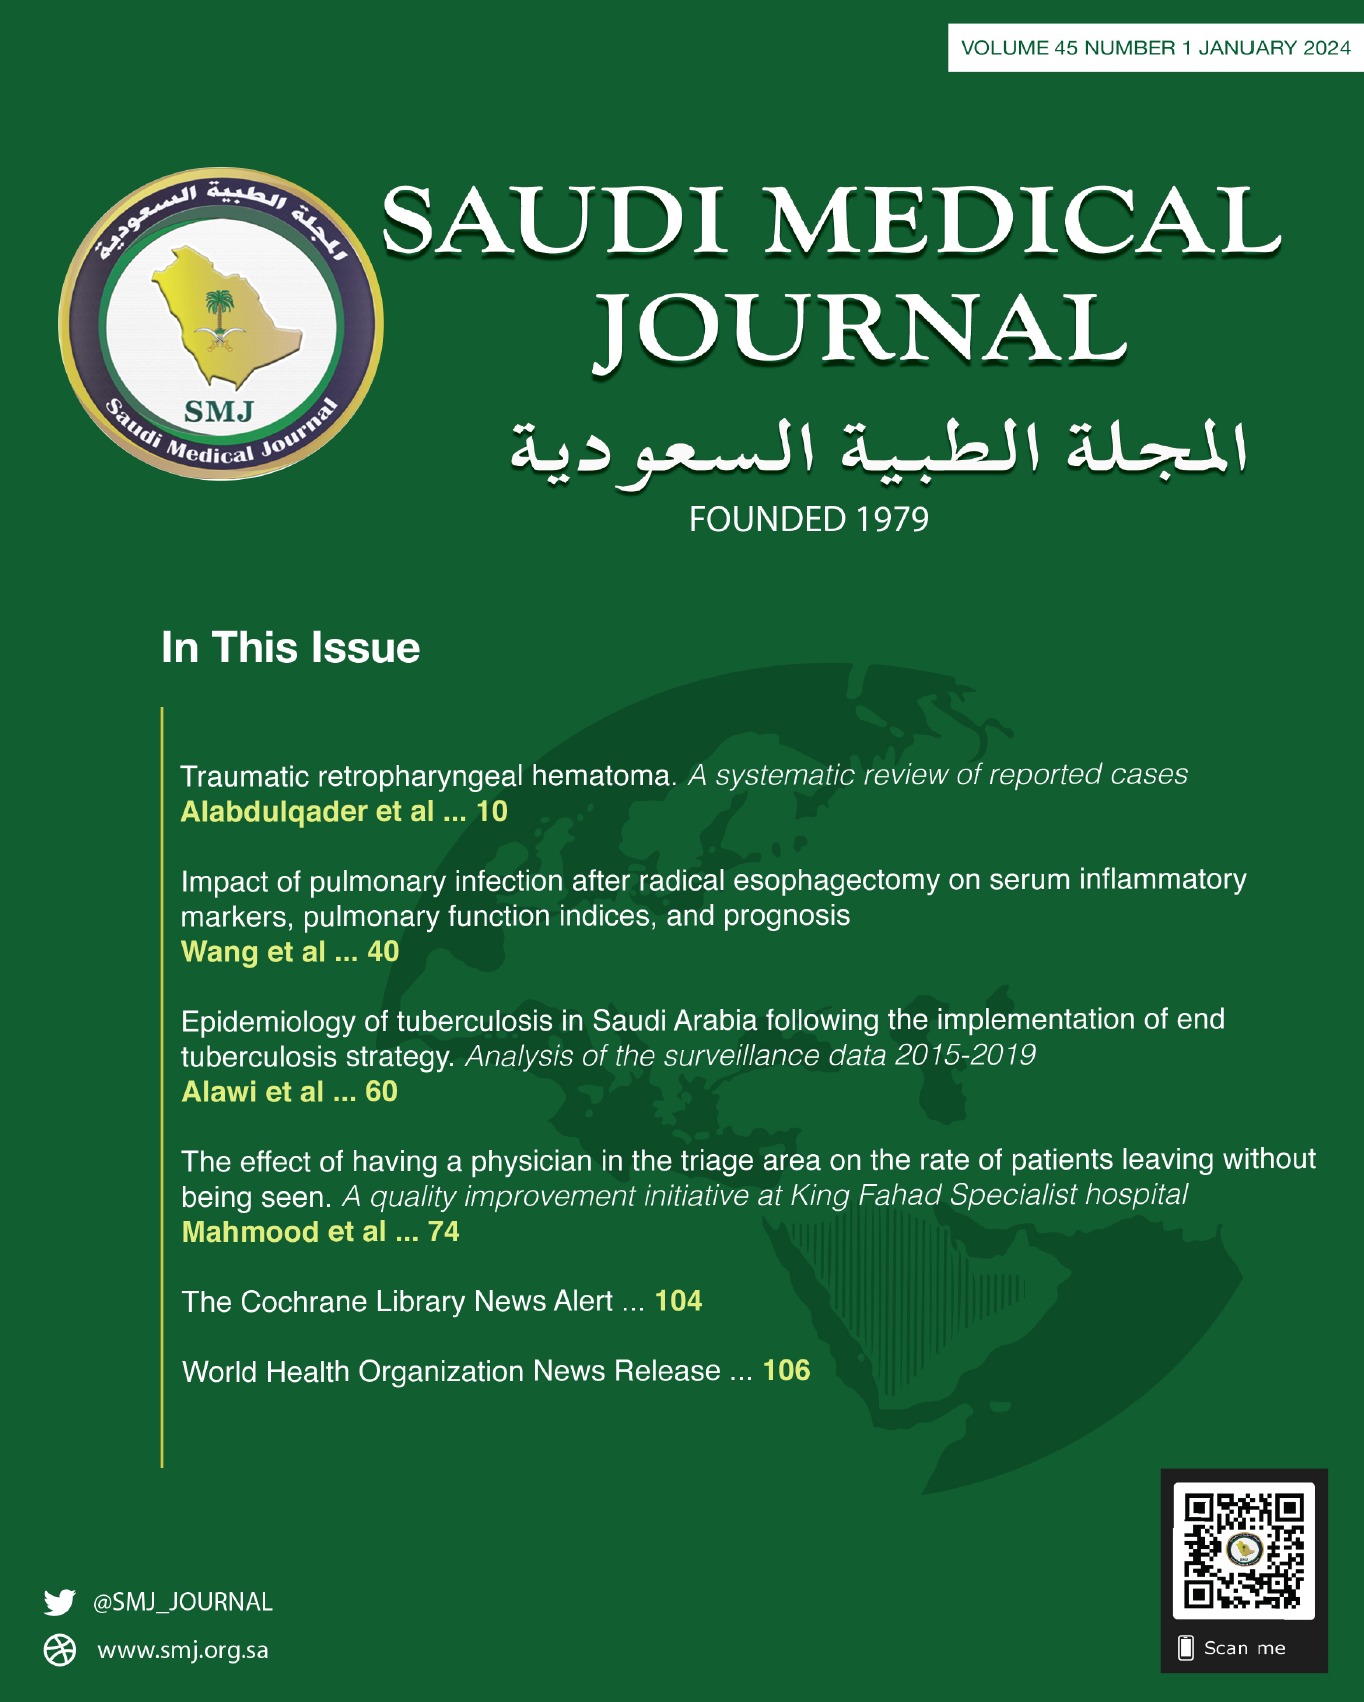 Saudi Medical Journal Message